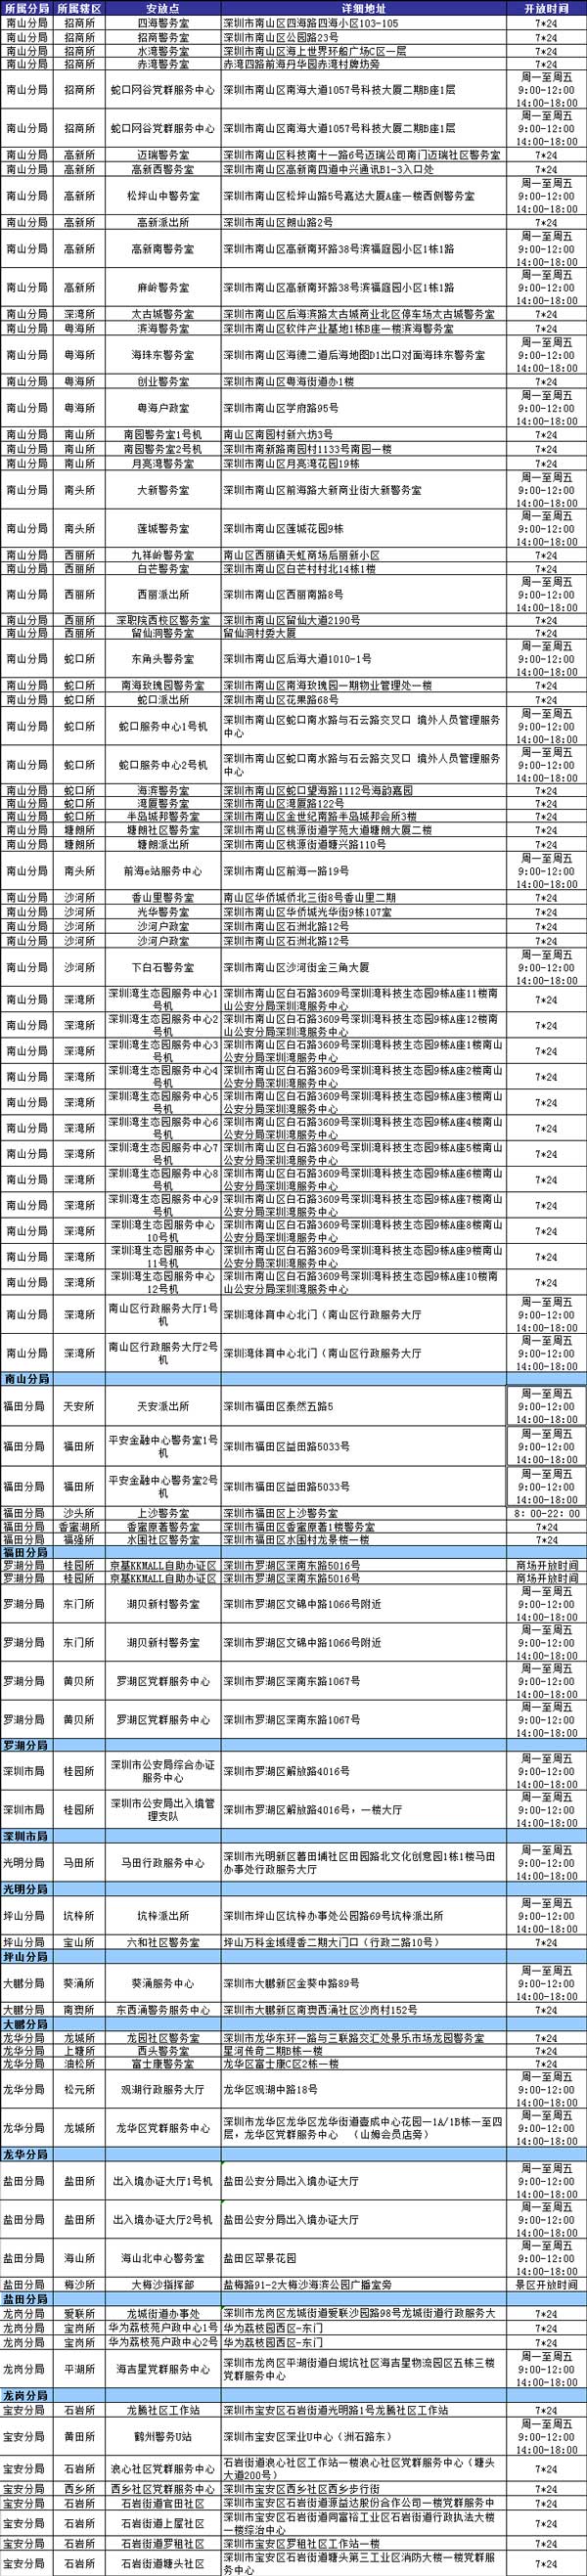 深圳身份证自助办理机地址一览